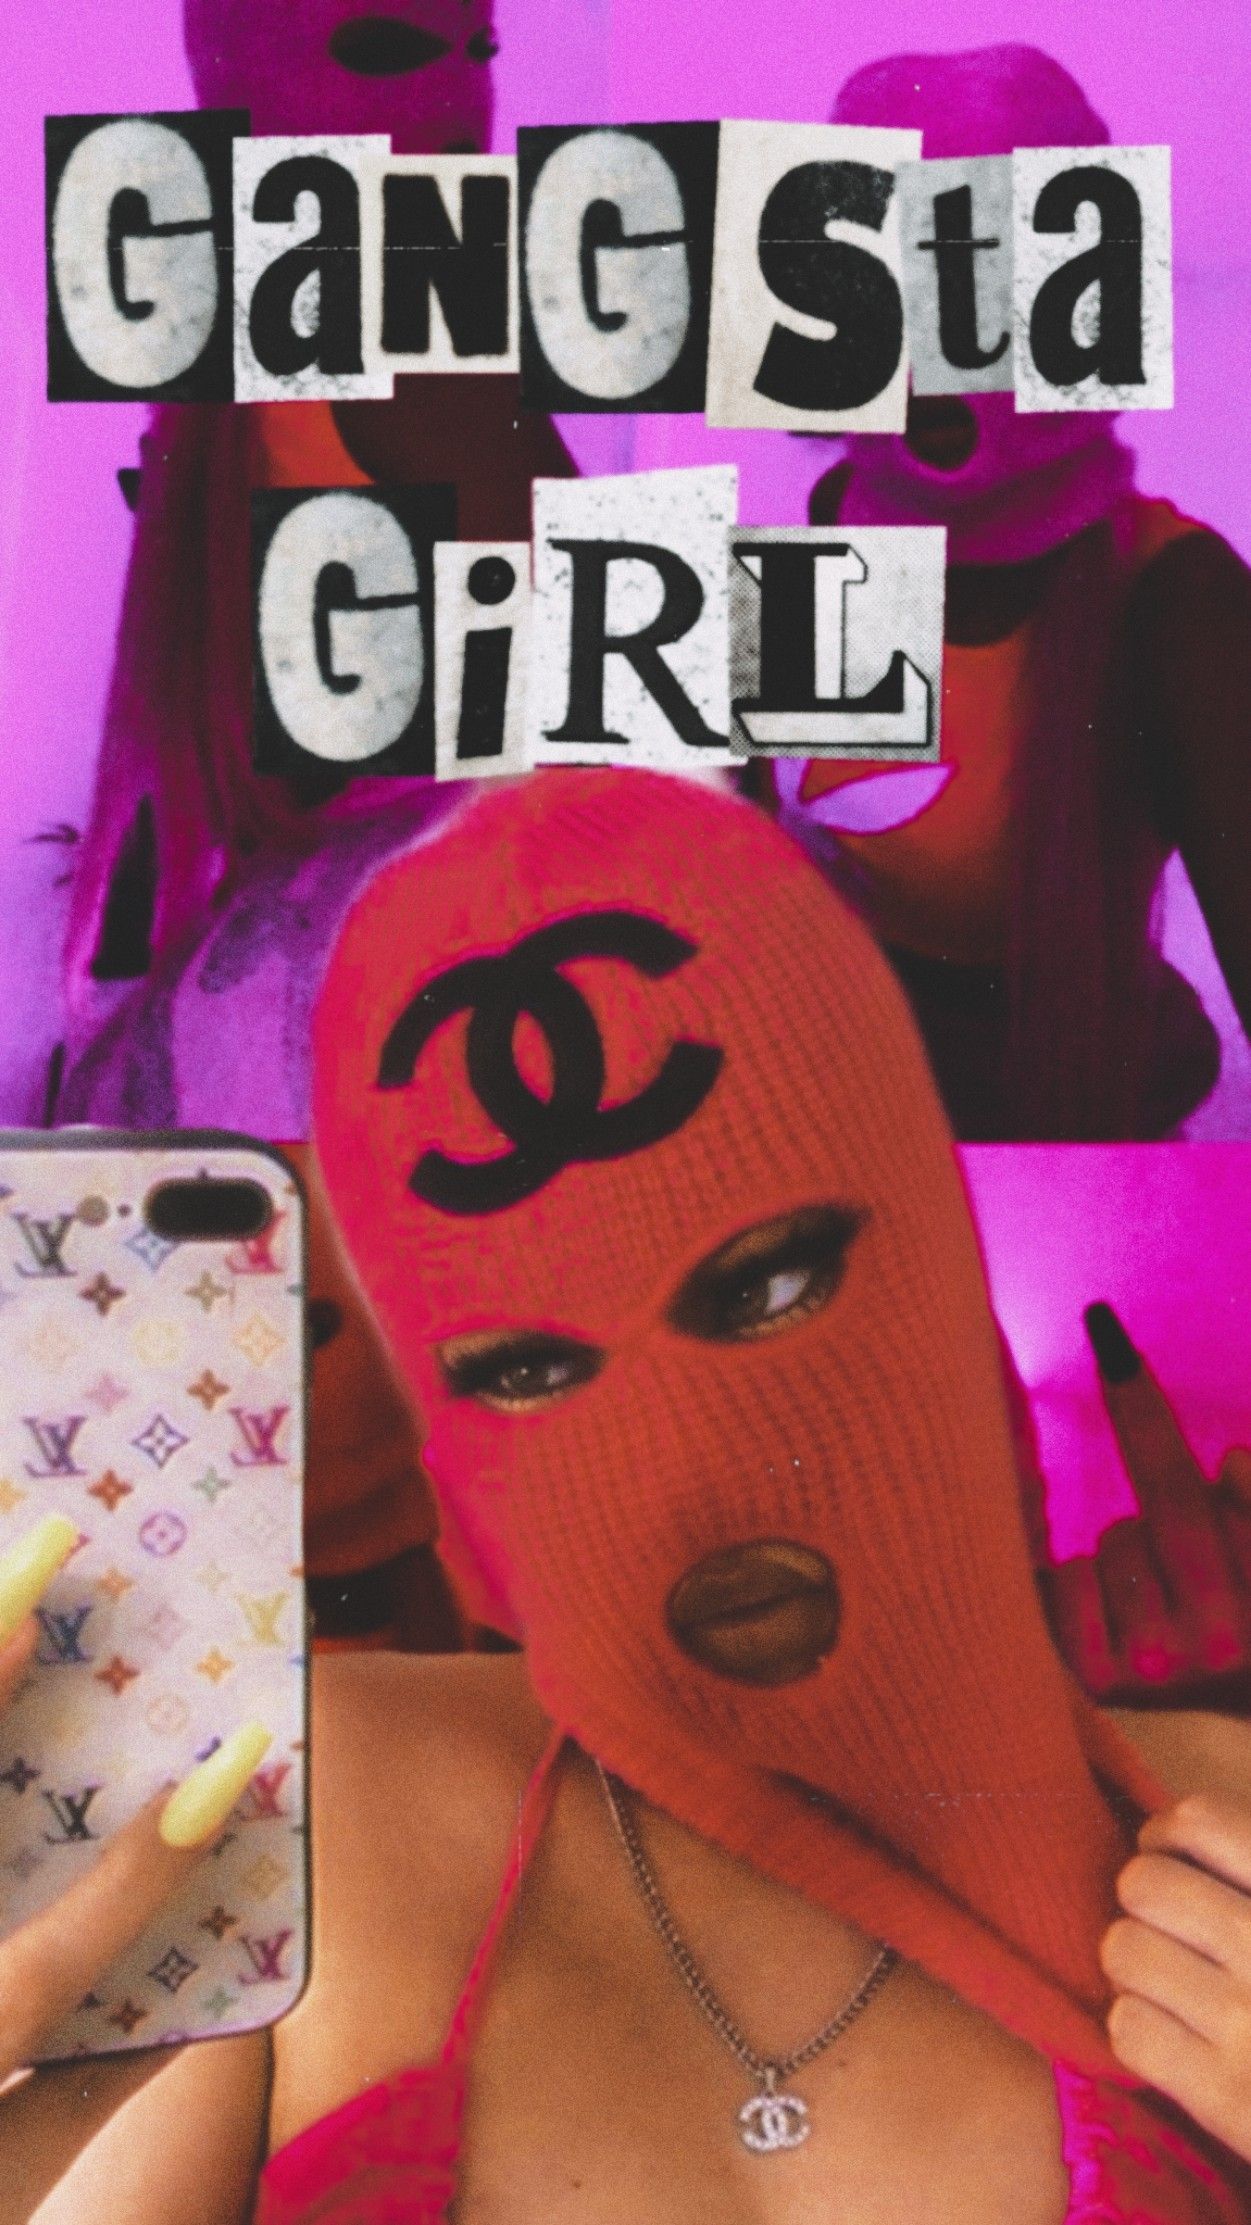 Bad girl wallpaper, Gangsta girl, Sassy